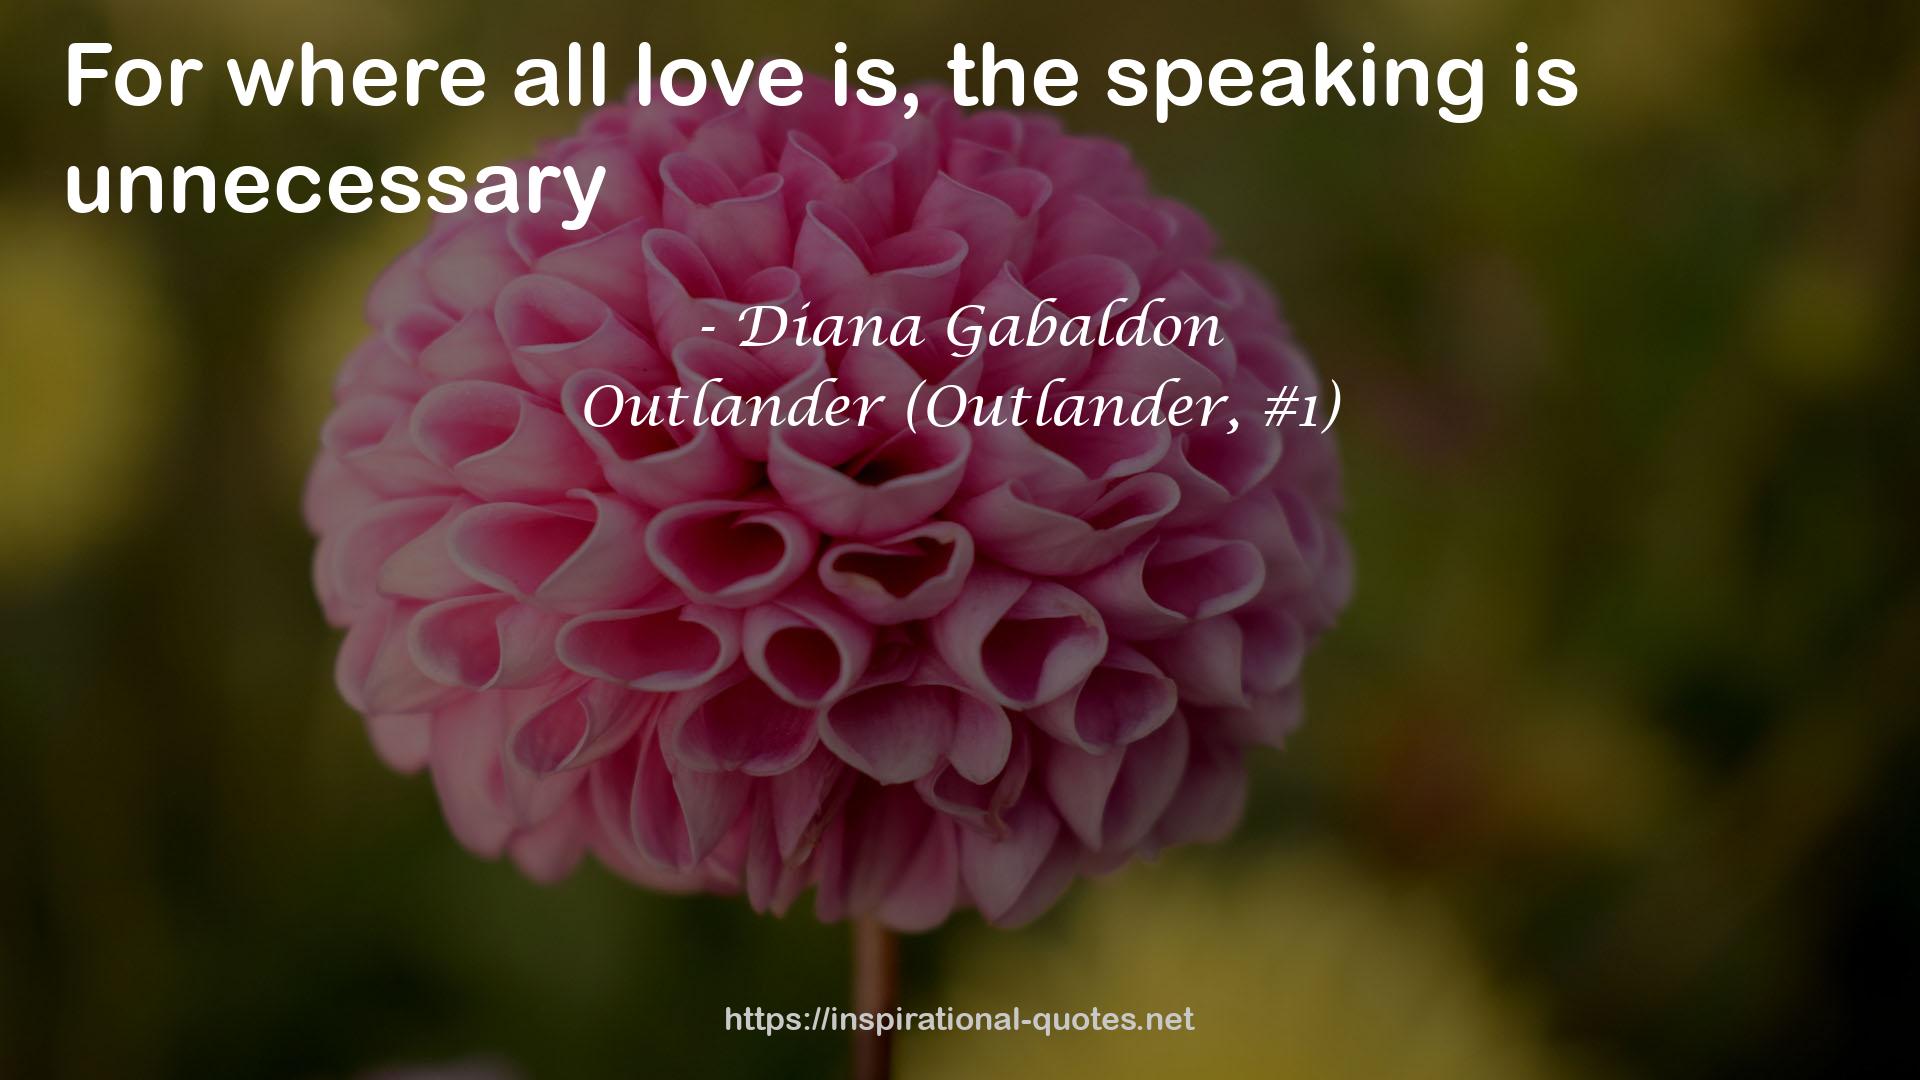 Outlander (Outlander, #1) QUOTES